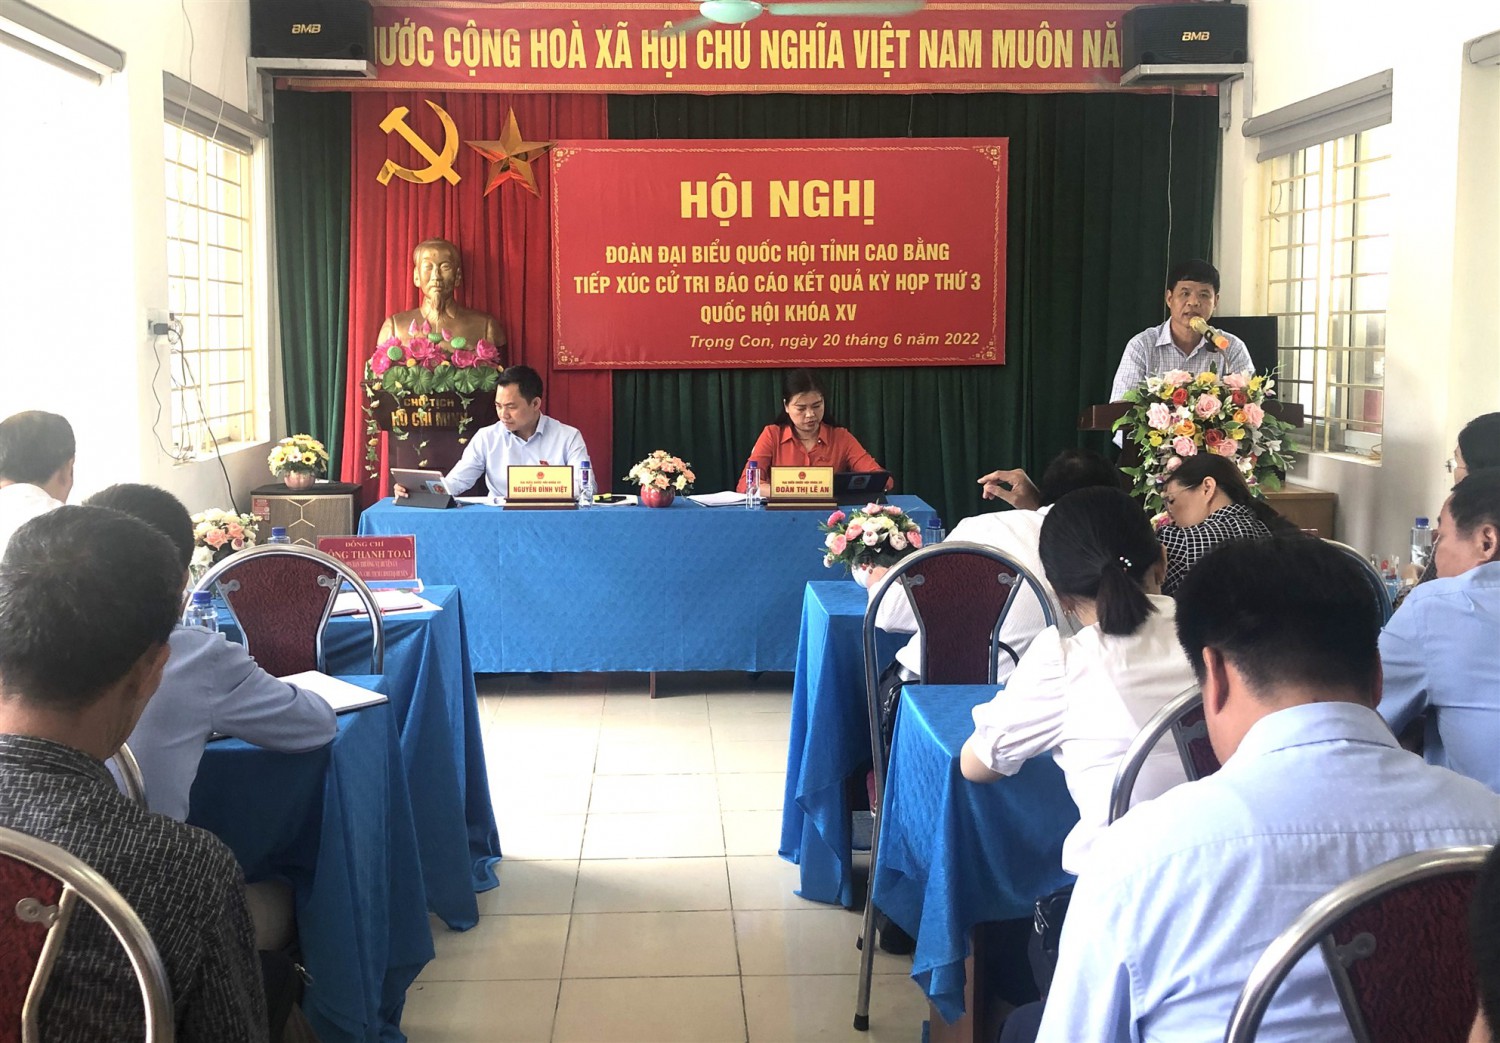 Đoàn đại biểu Quốc hội tỉnh Cao Bằng tiếp xúc cử tri sau kỳ họp thứ 3, Quốc hội khóa XV tại huyệnThạch An